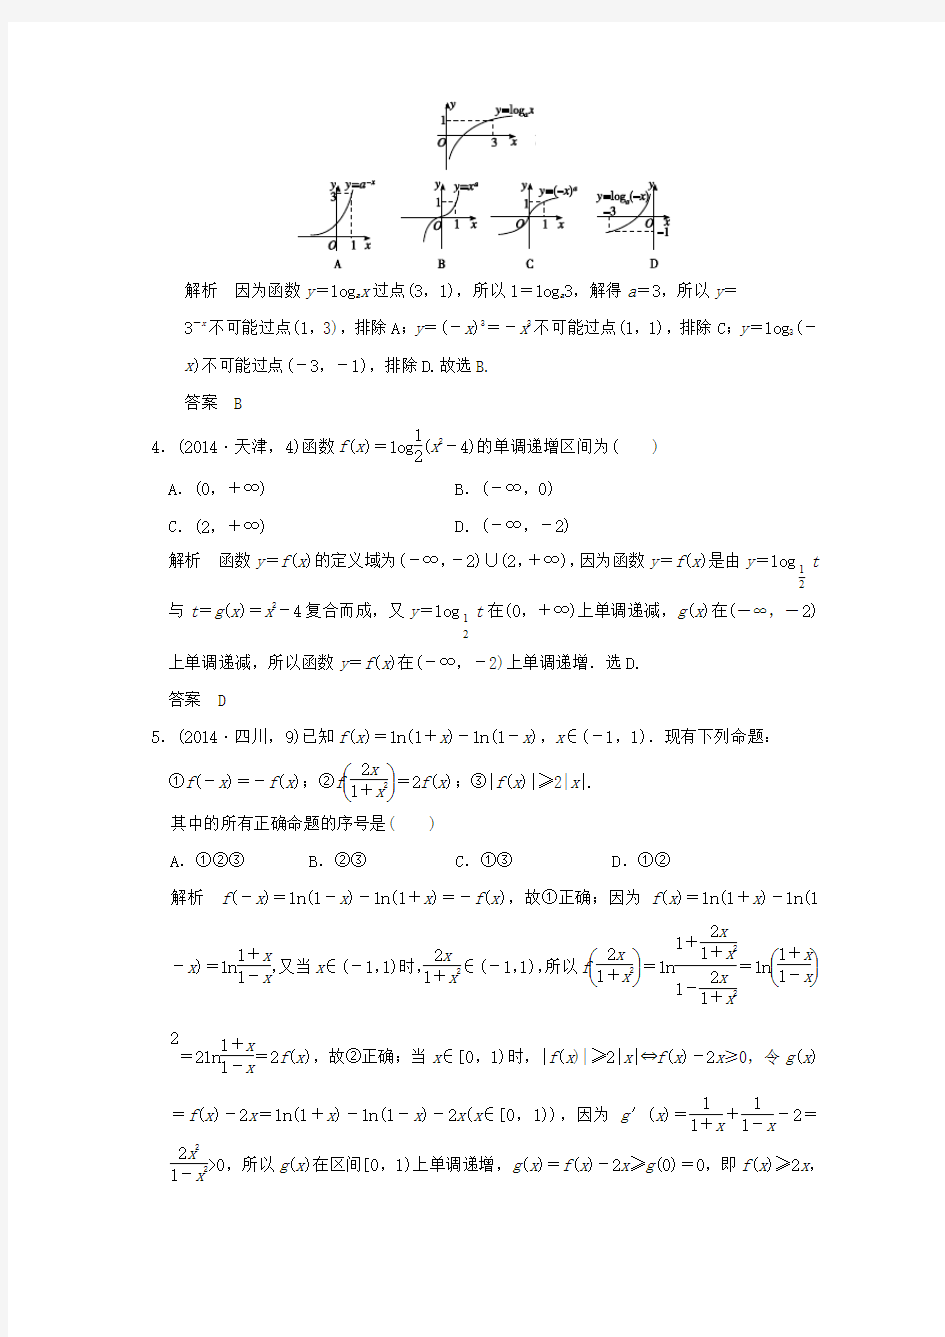 (五年高考真题)2016届高考数学复习 第二章 第五节 对数与对数函数 理(全国通用)